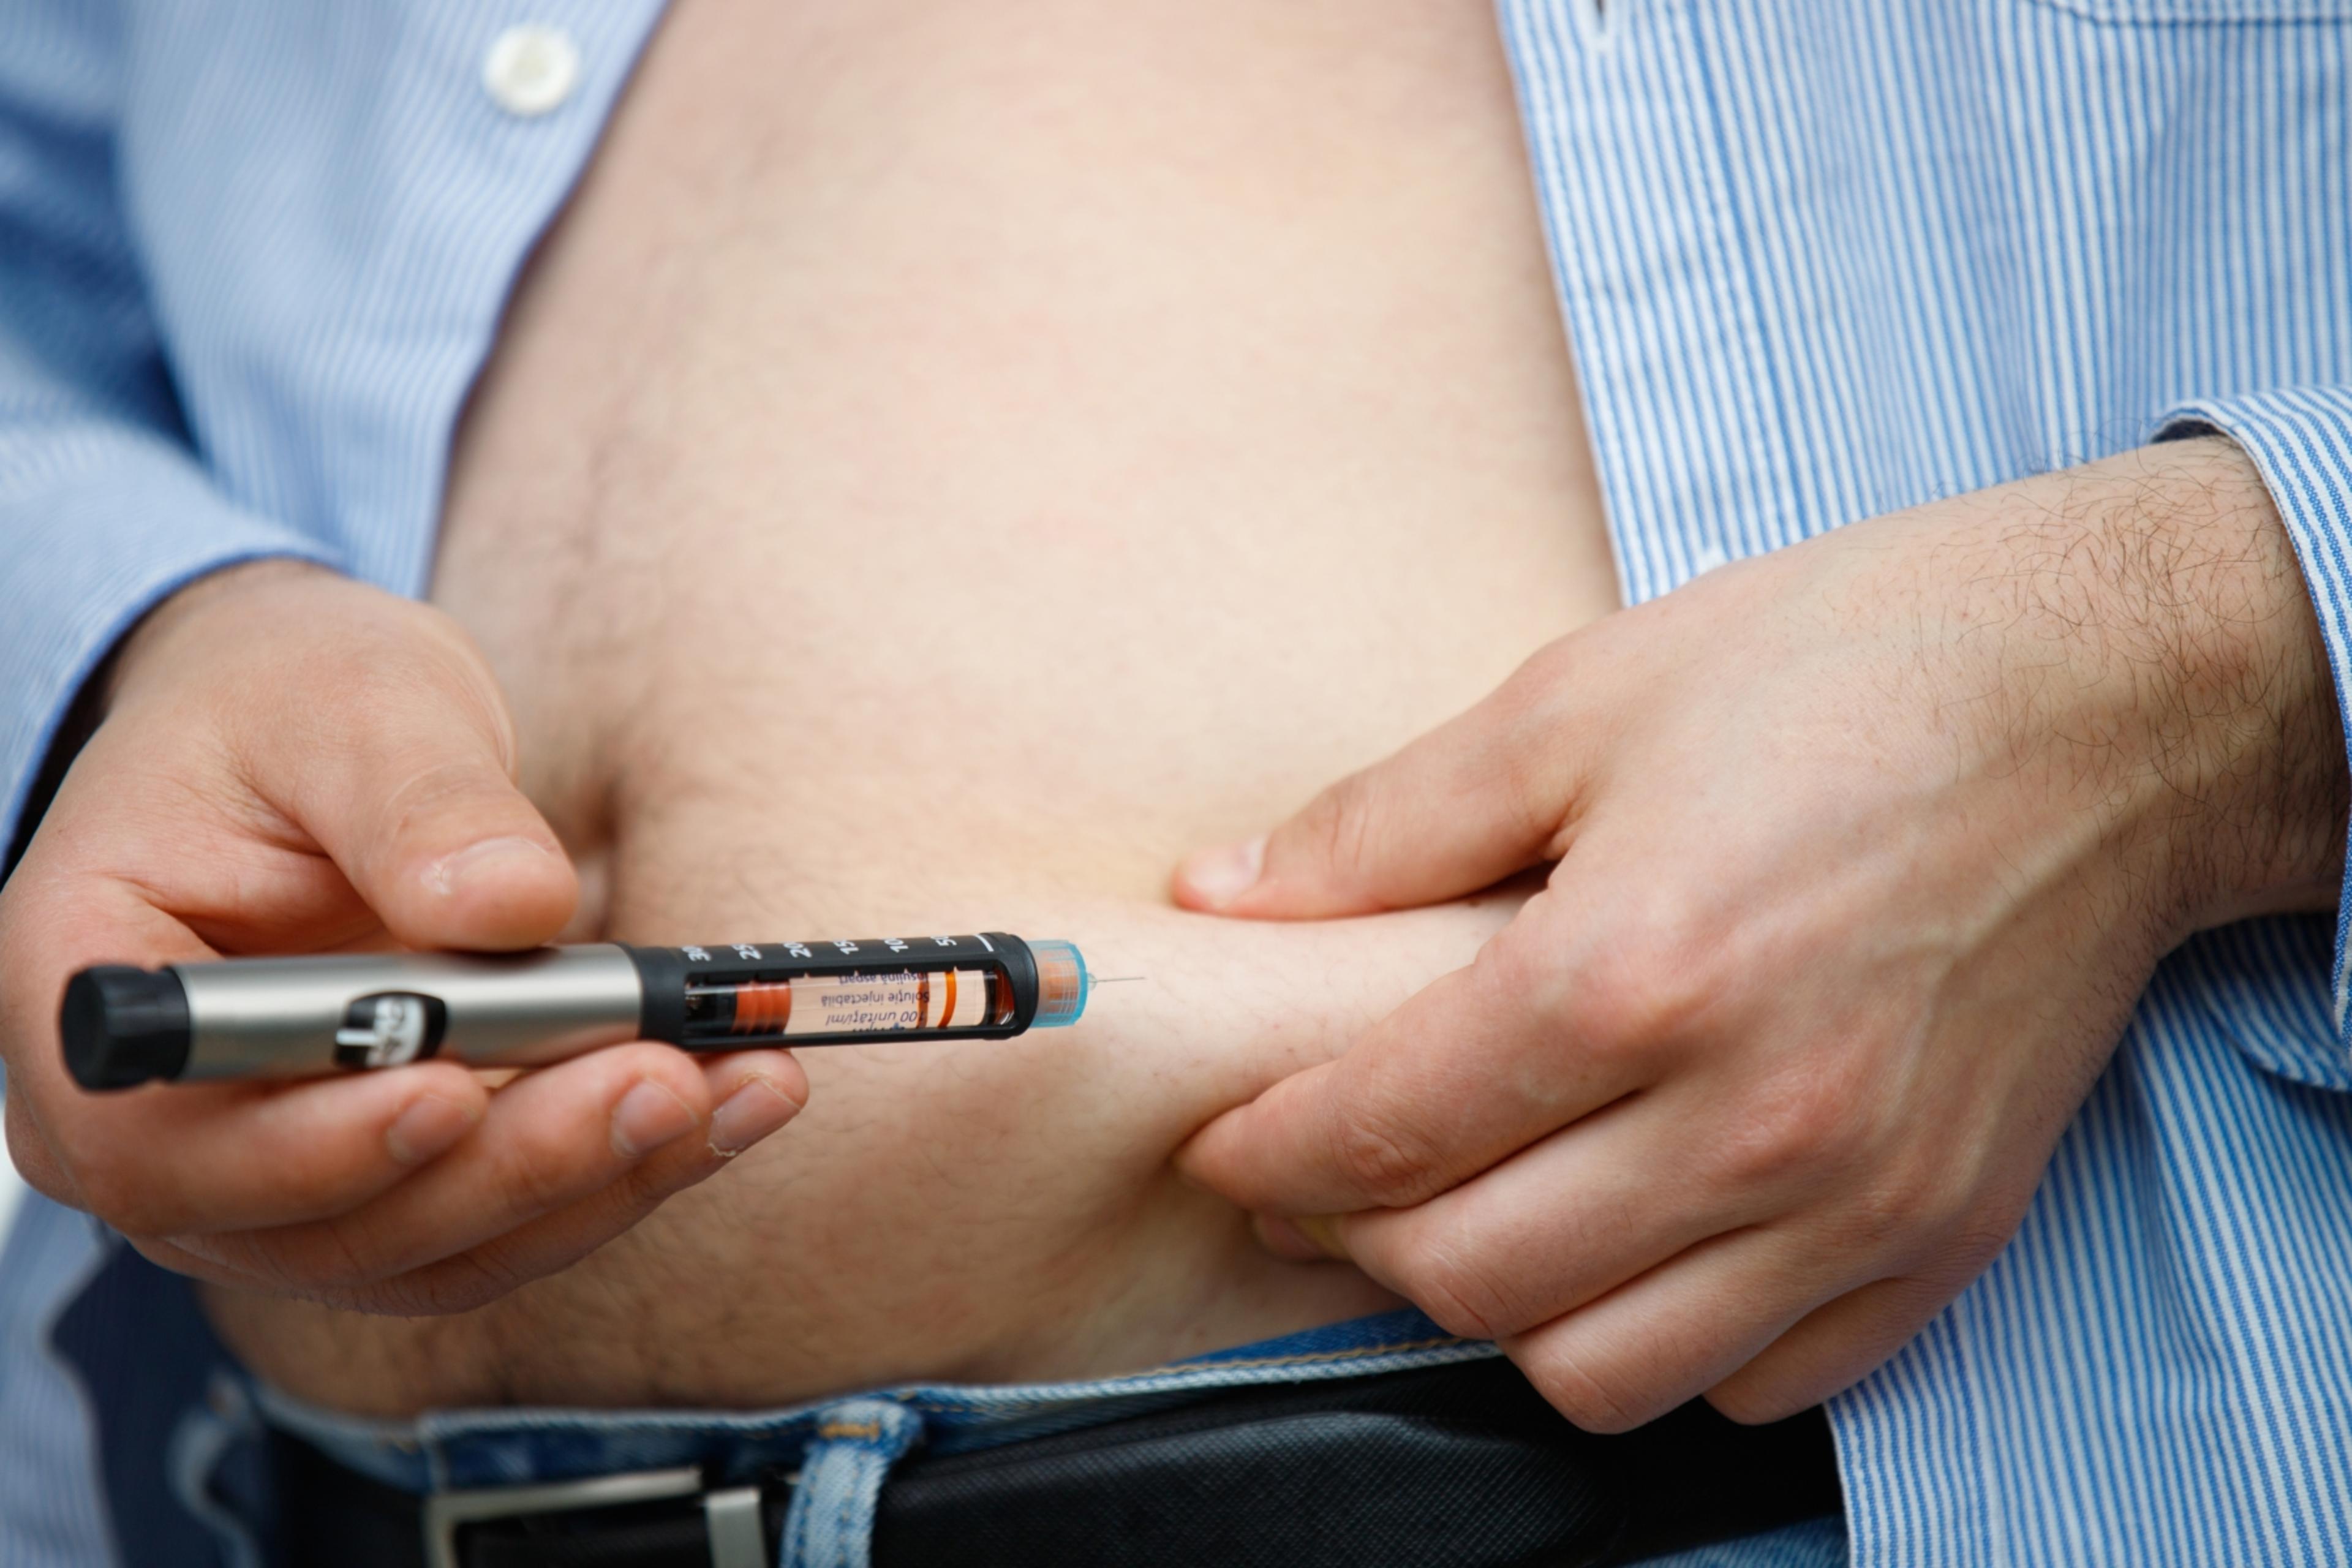 Administrering av snabbverkande insulin i buken på en bild. Med en hand lyfts en hudveck från magen, i vilken pennan trycks in vinkelrätt innan insulinet doseras genom att trycka på pennans ände.